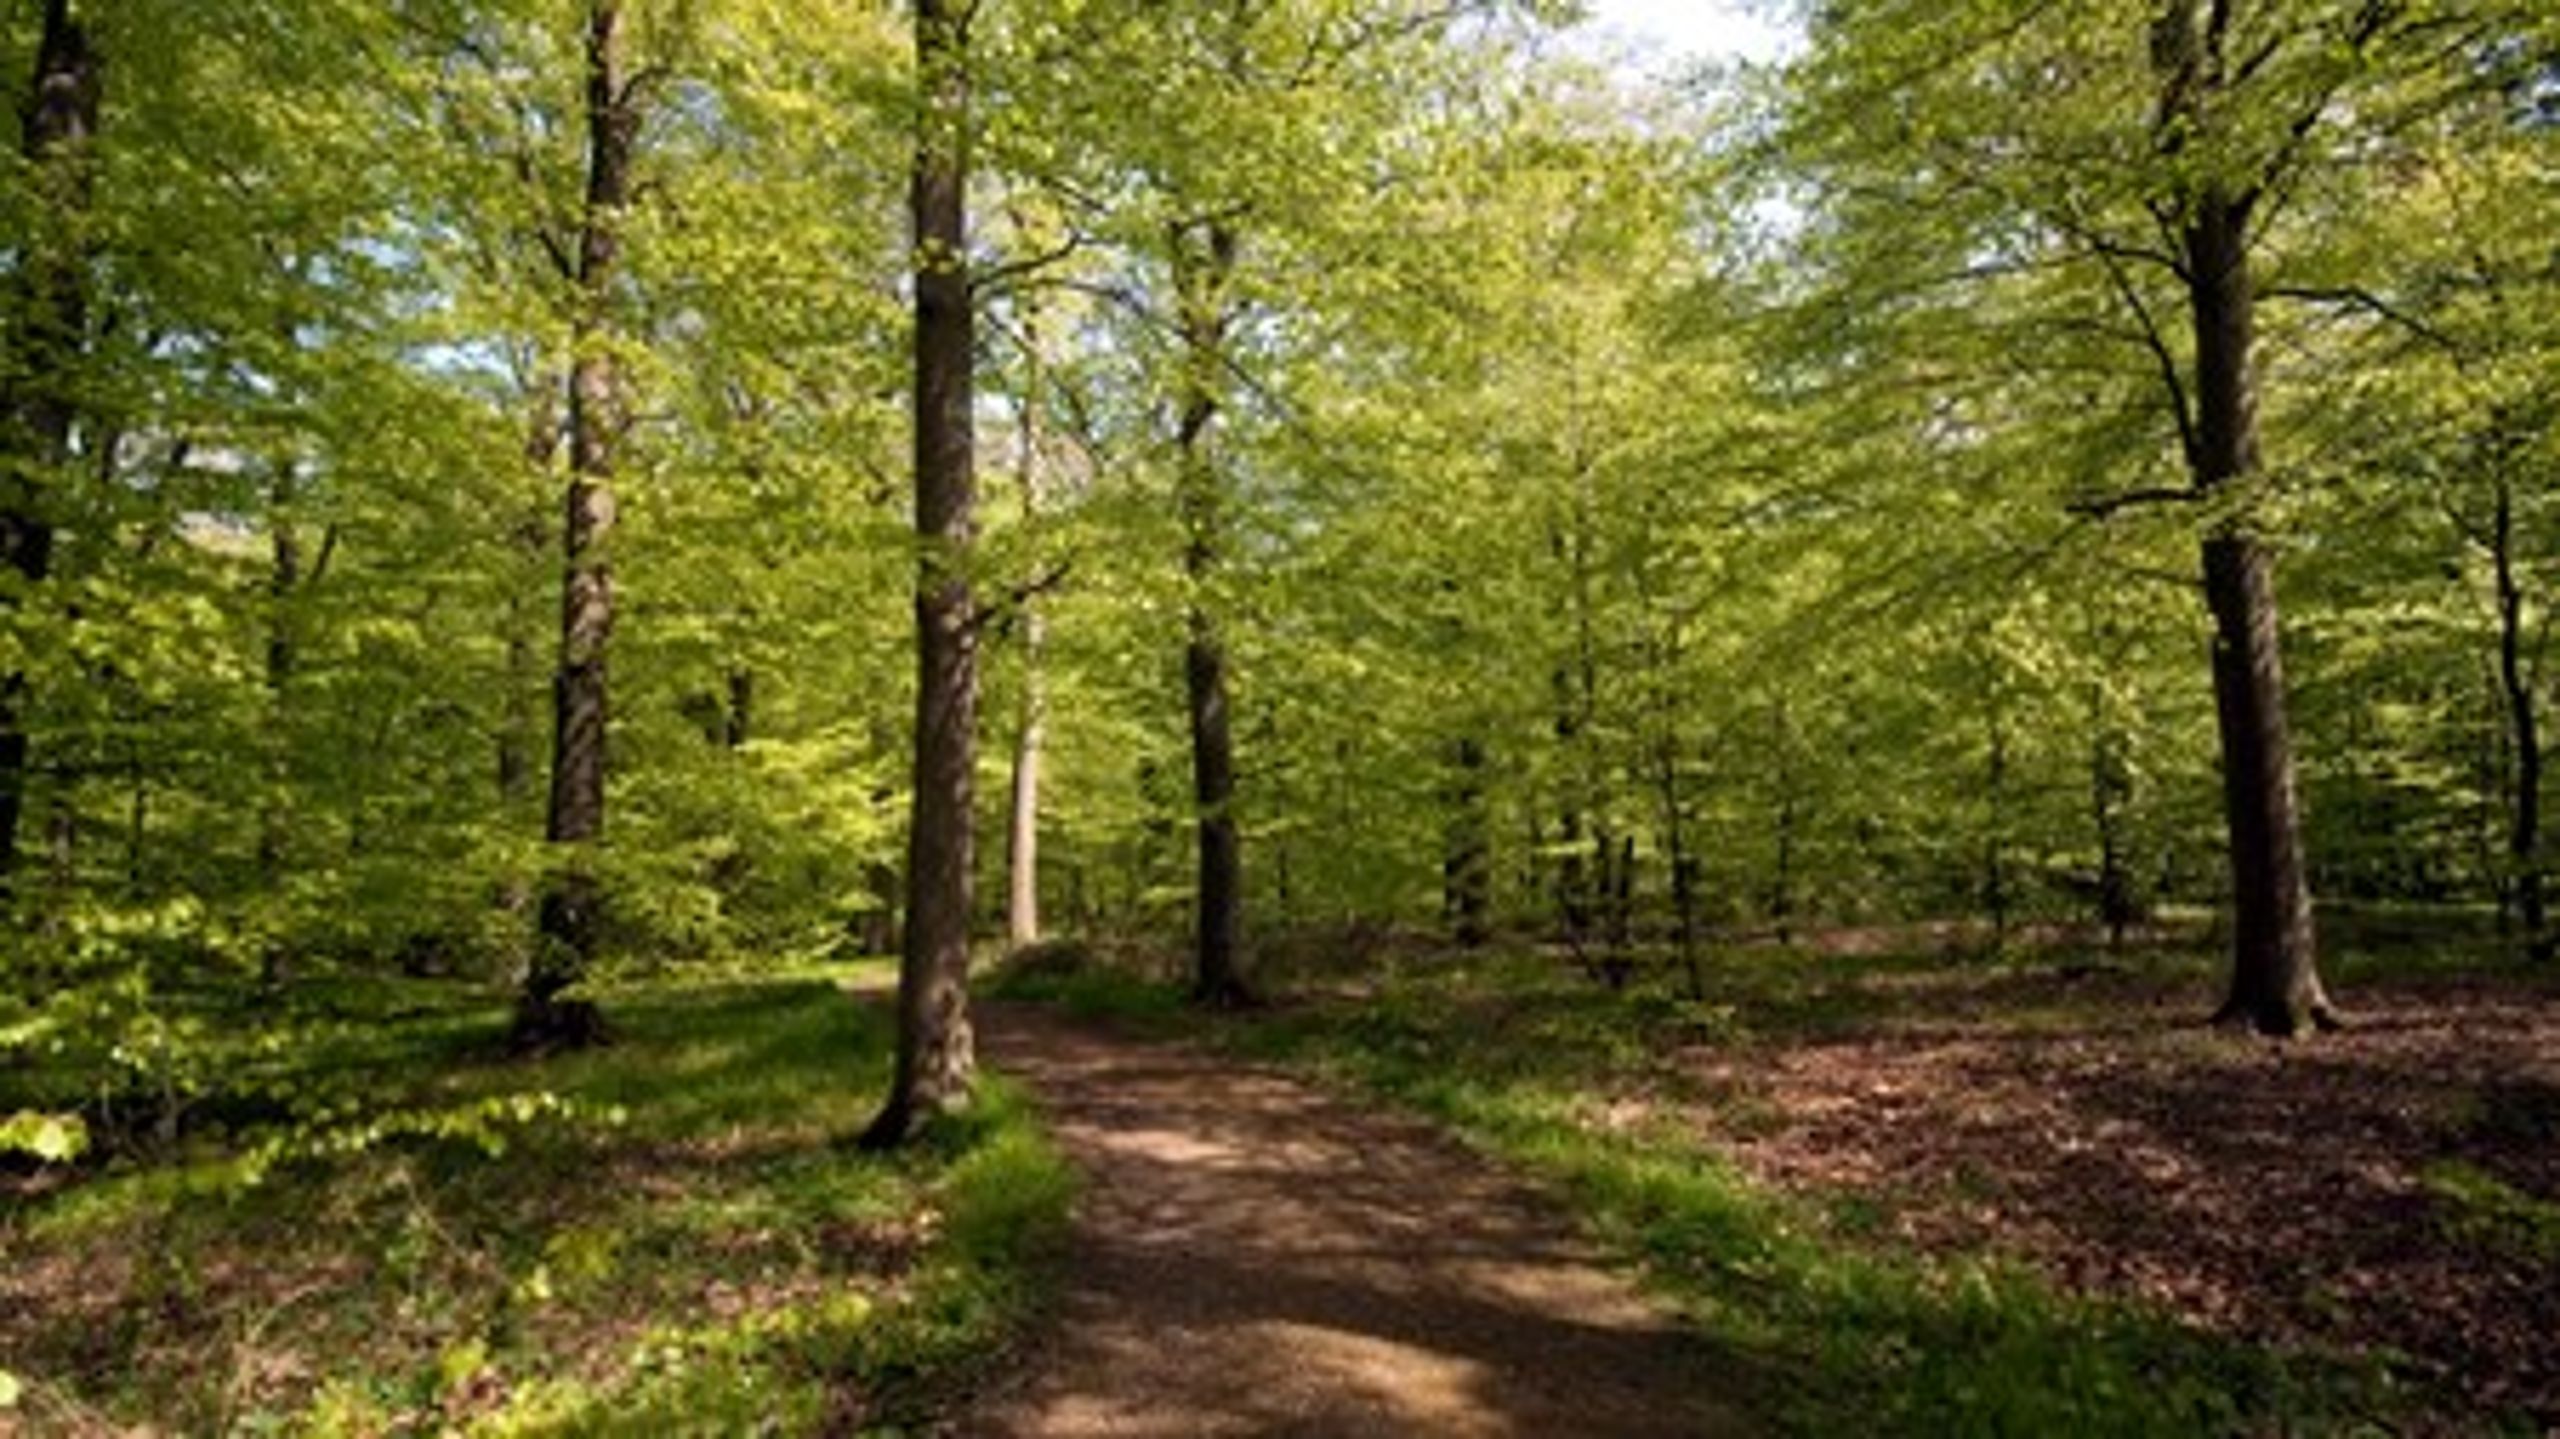 Den danske udgave af nationalpark er udvandet. Det er derfor langt vigtigere, at statsskovene læsses om til urørt skov. Det mener Kenneth Buk fra Verdens Skove.